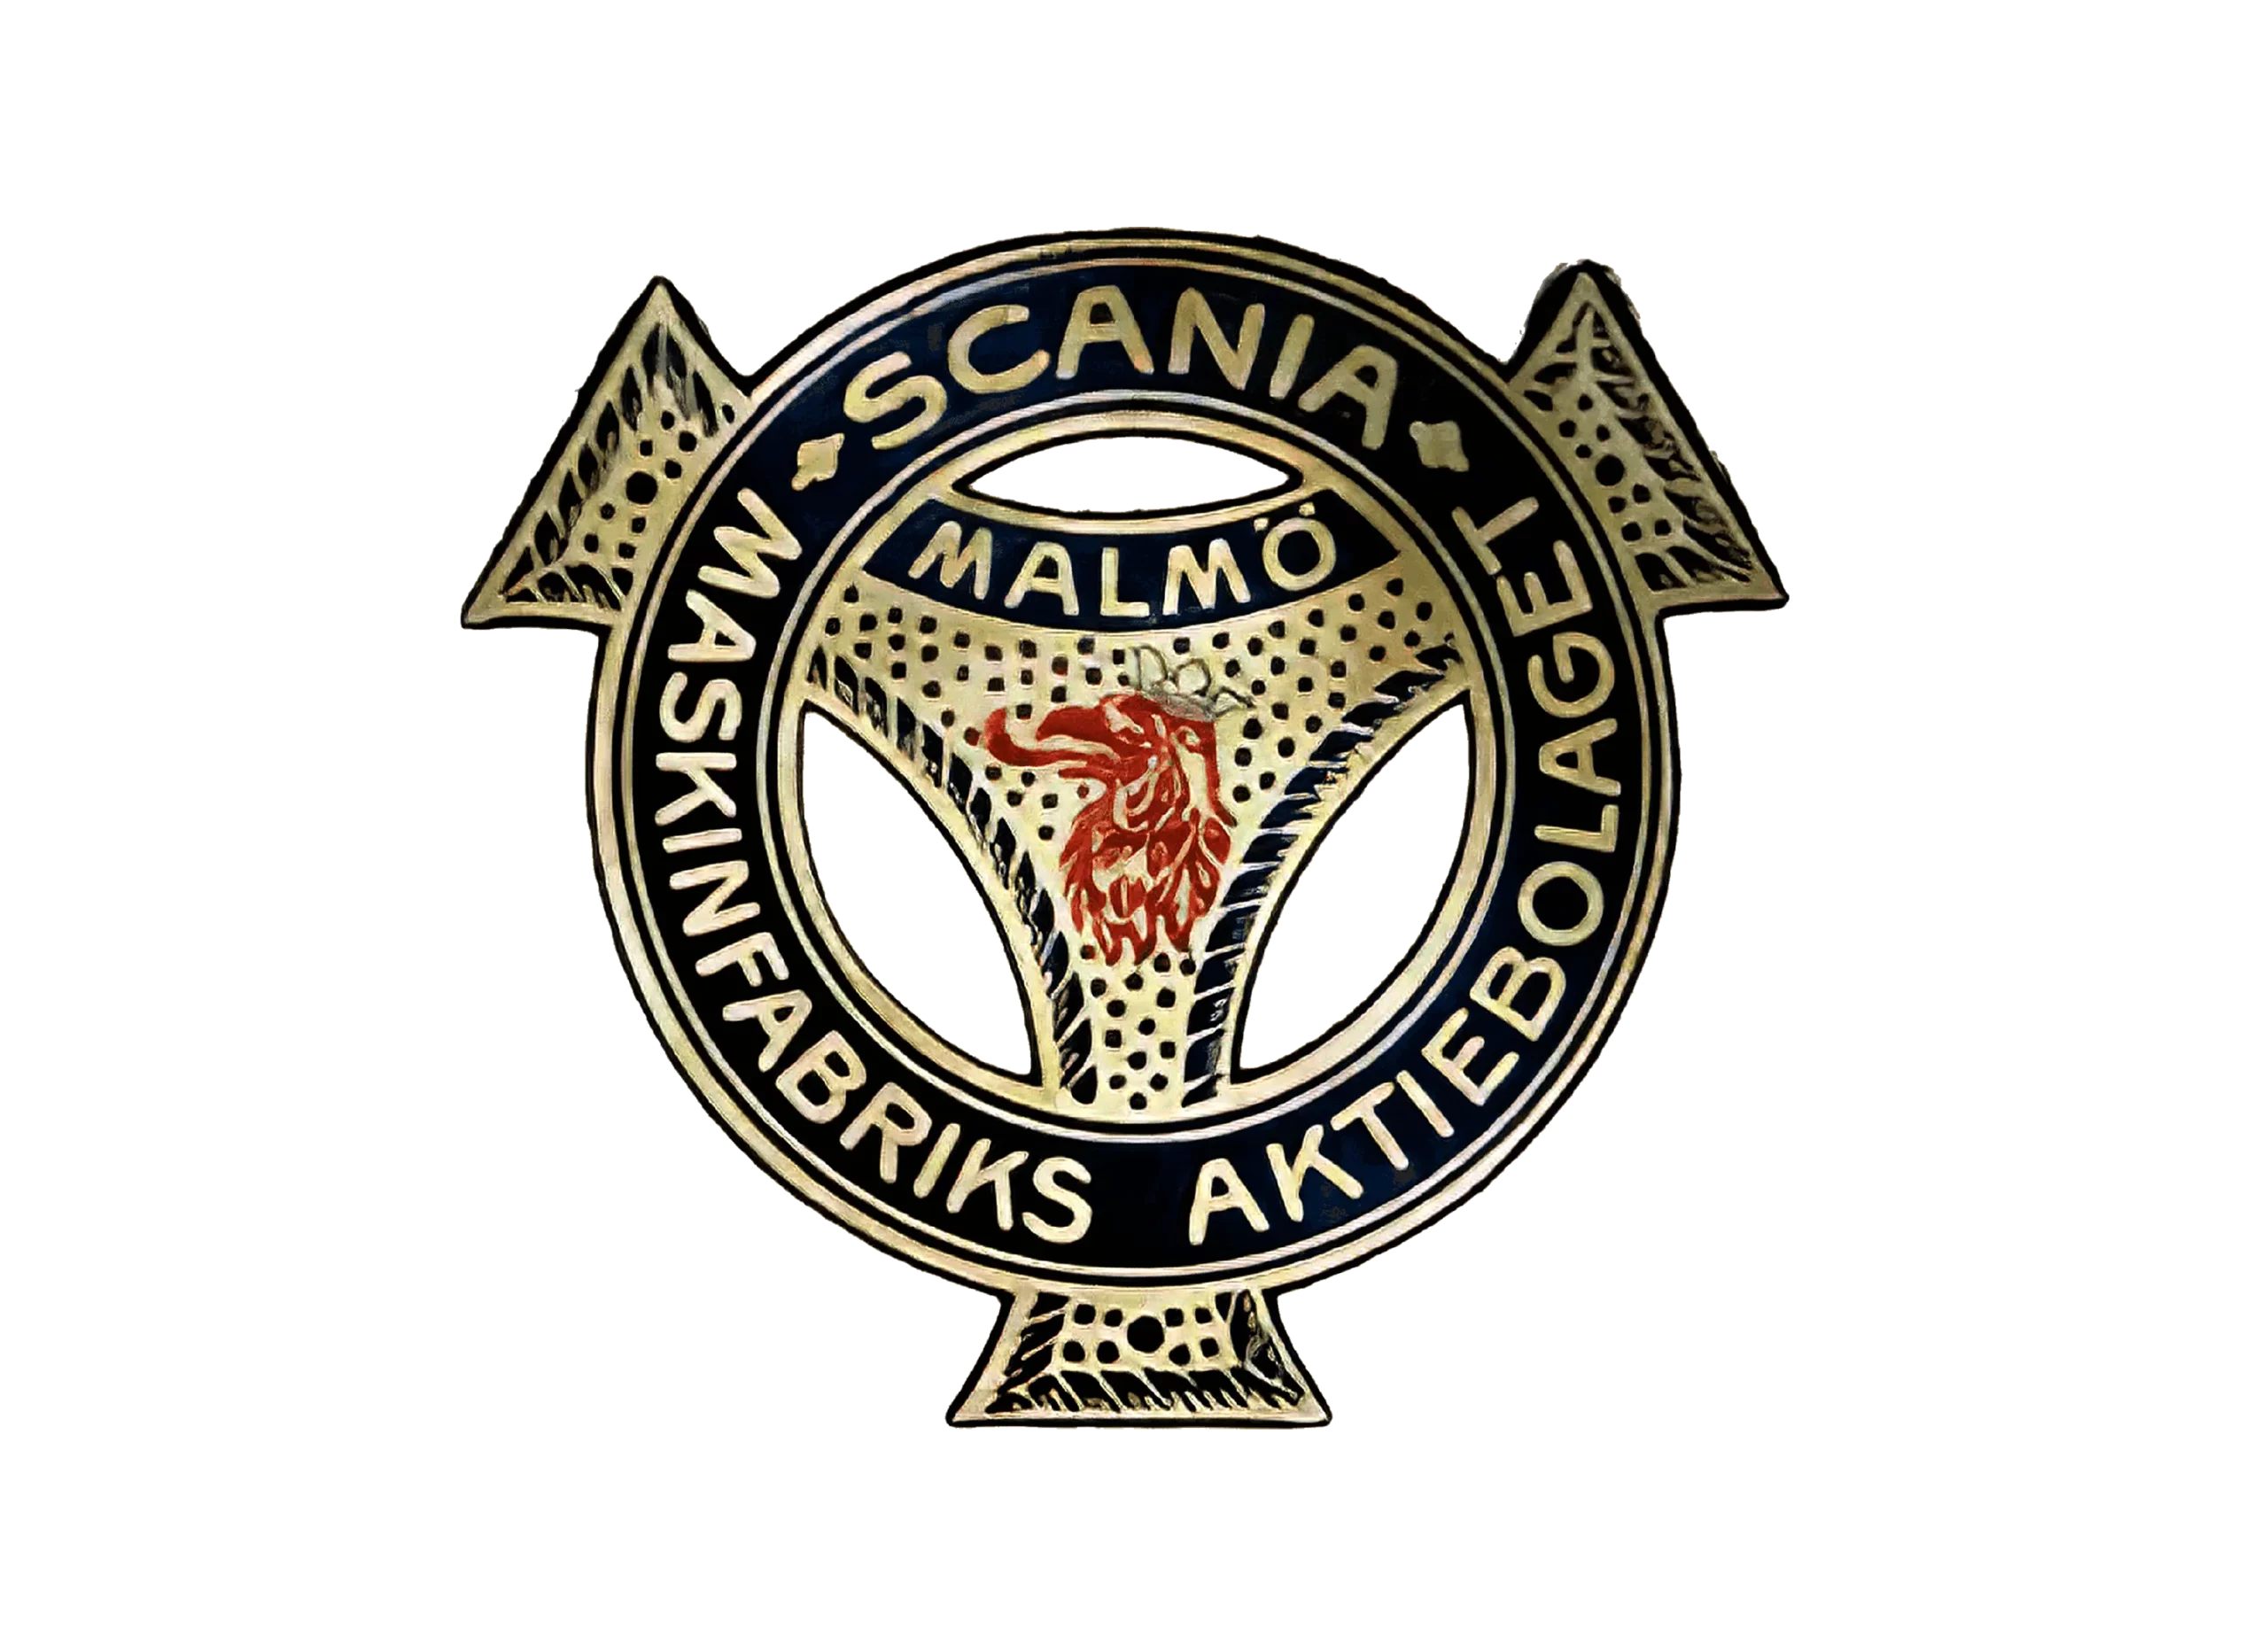 Scania logo 1901-1911